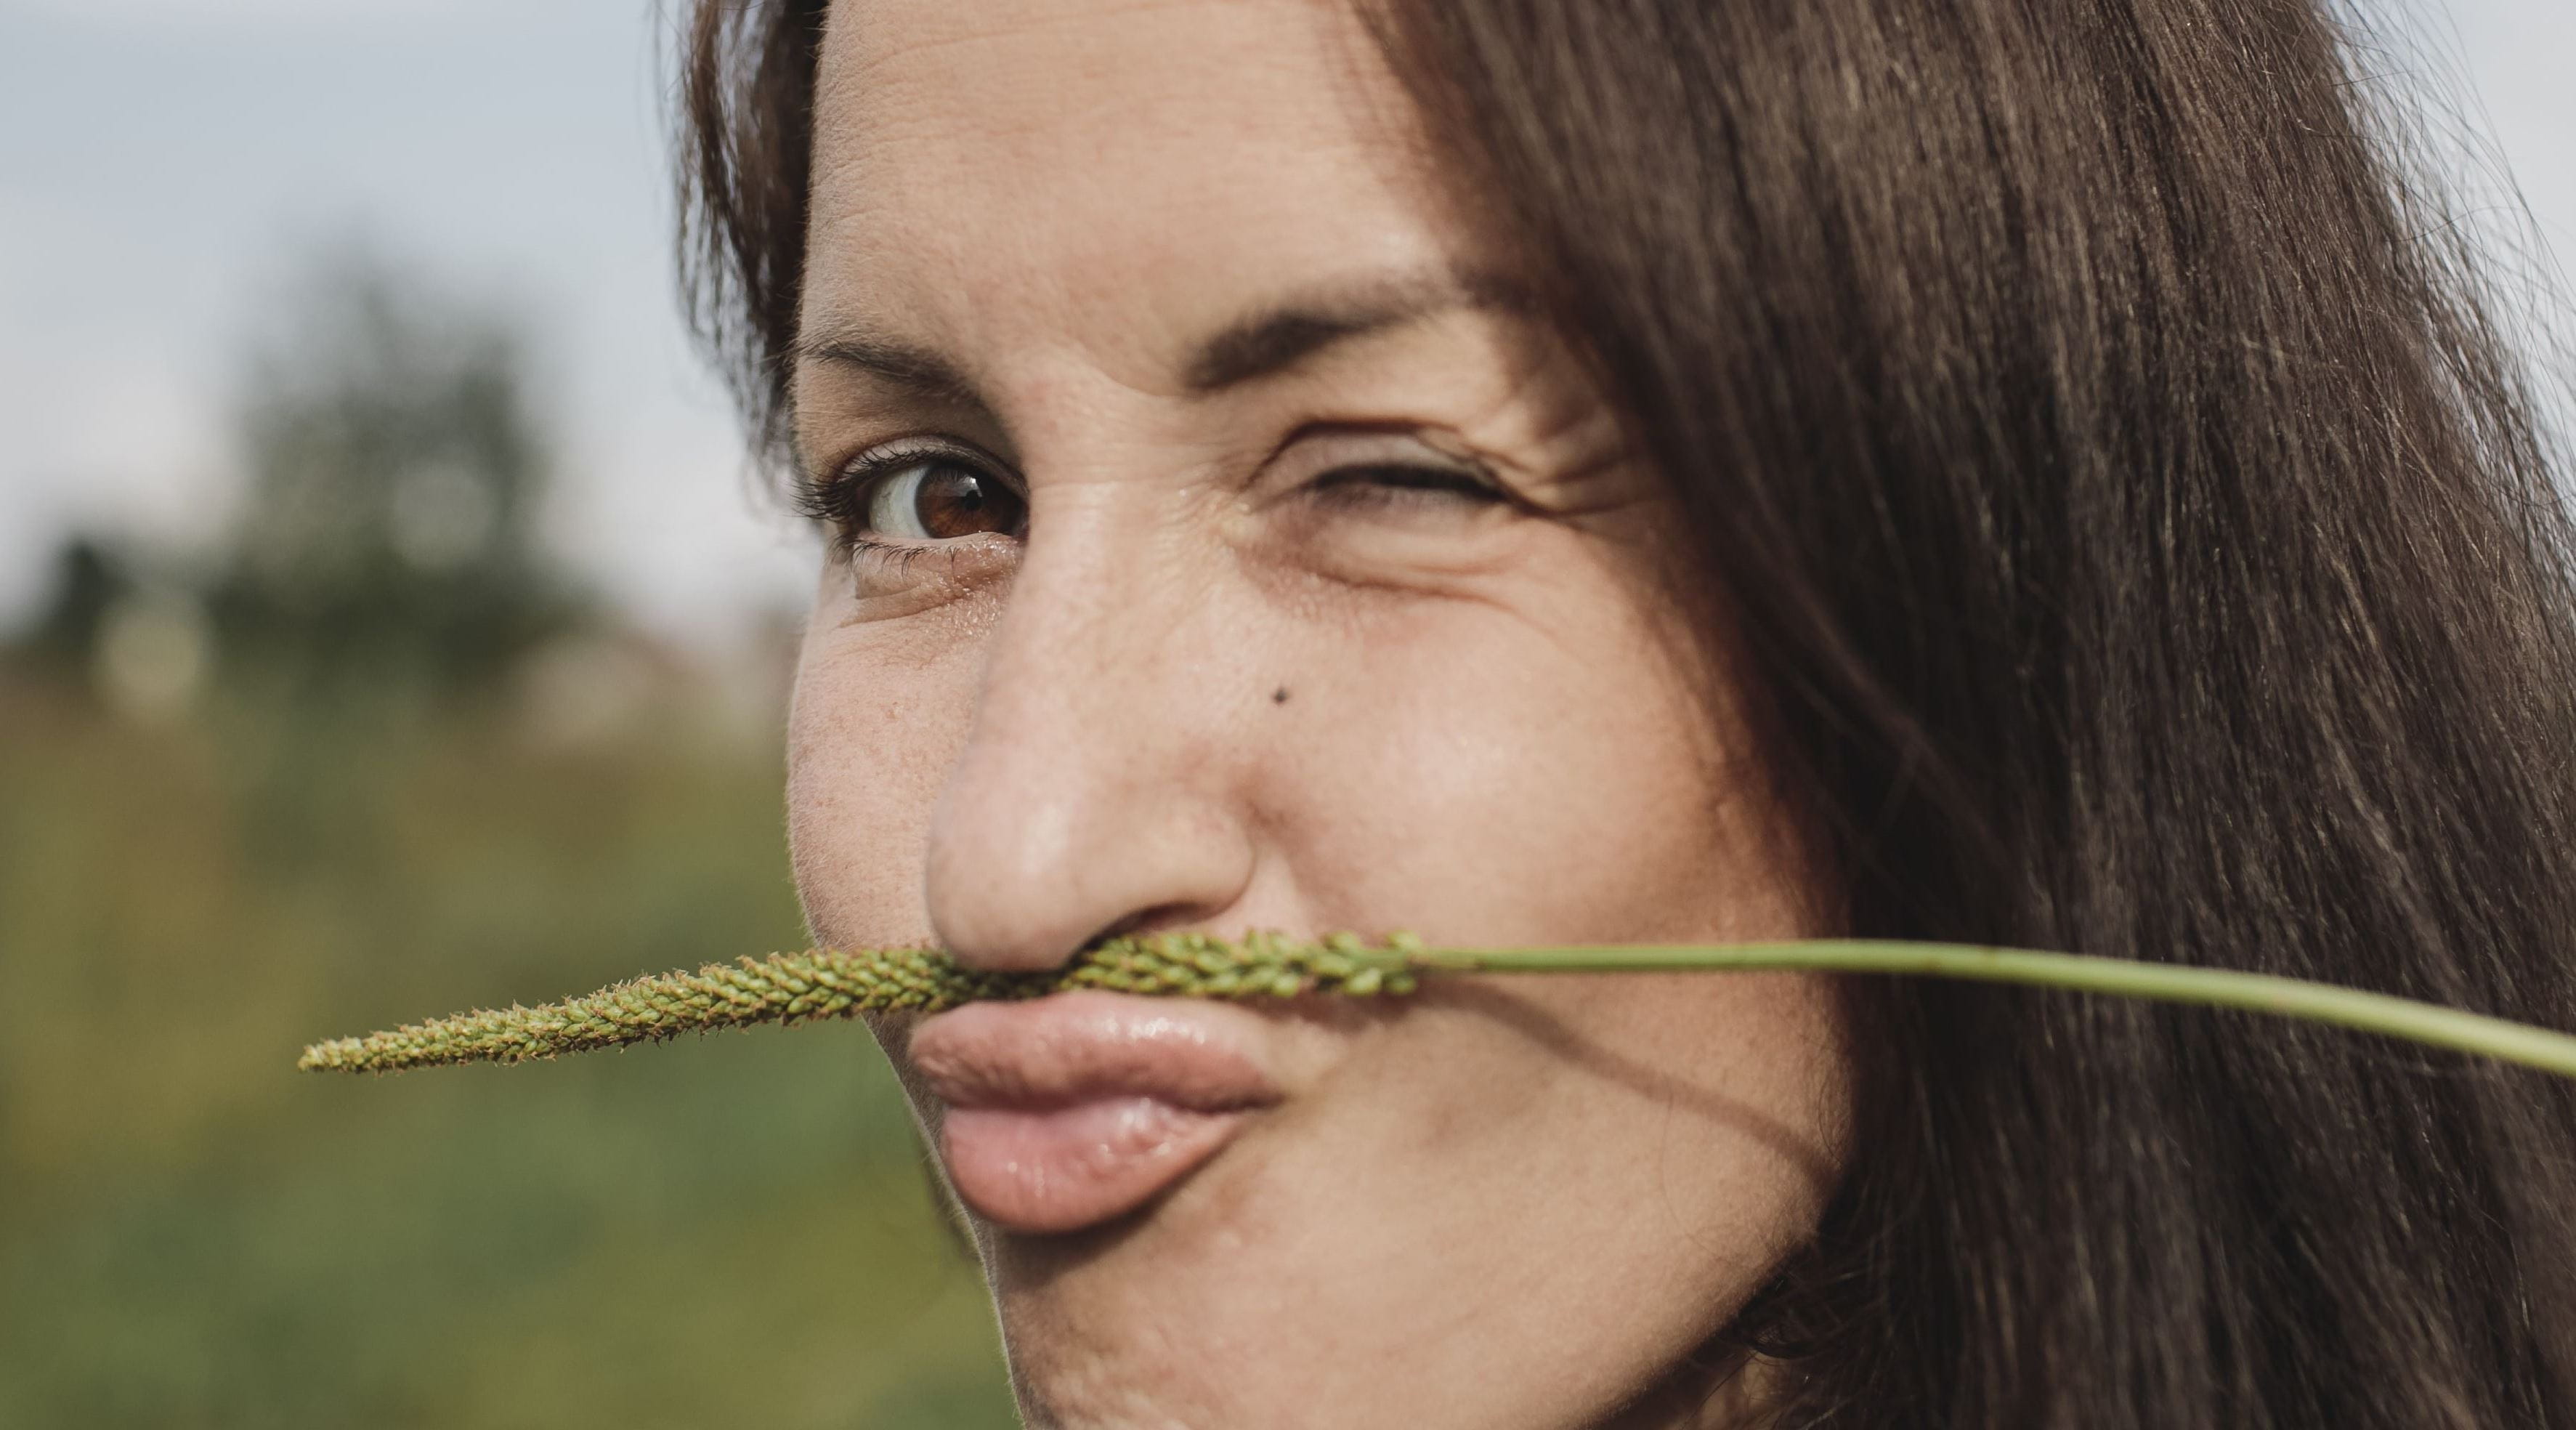 mulher com uma planta seca a fazer de bigode